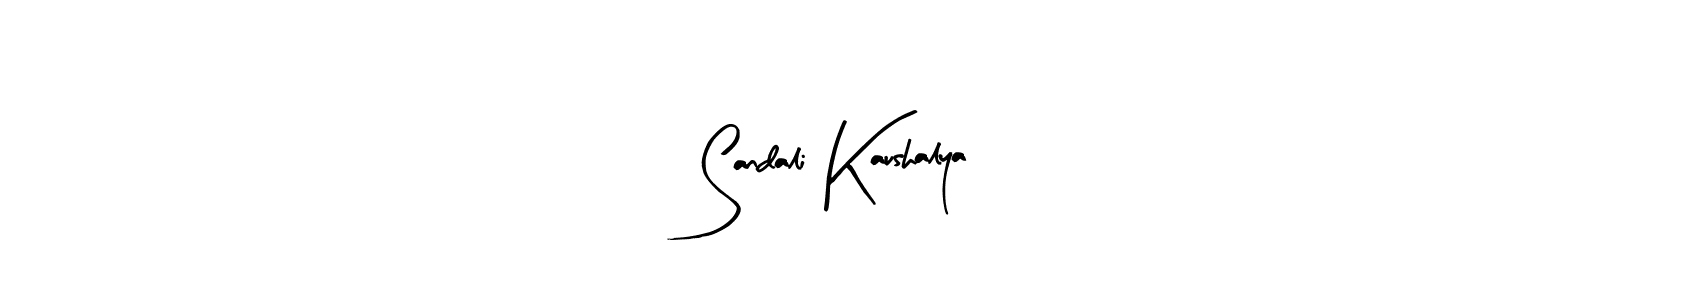 95+ Sandali Kaushalya Name Signature Style Ideas | Outstanding Name ...